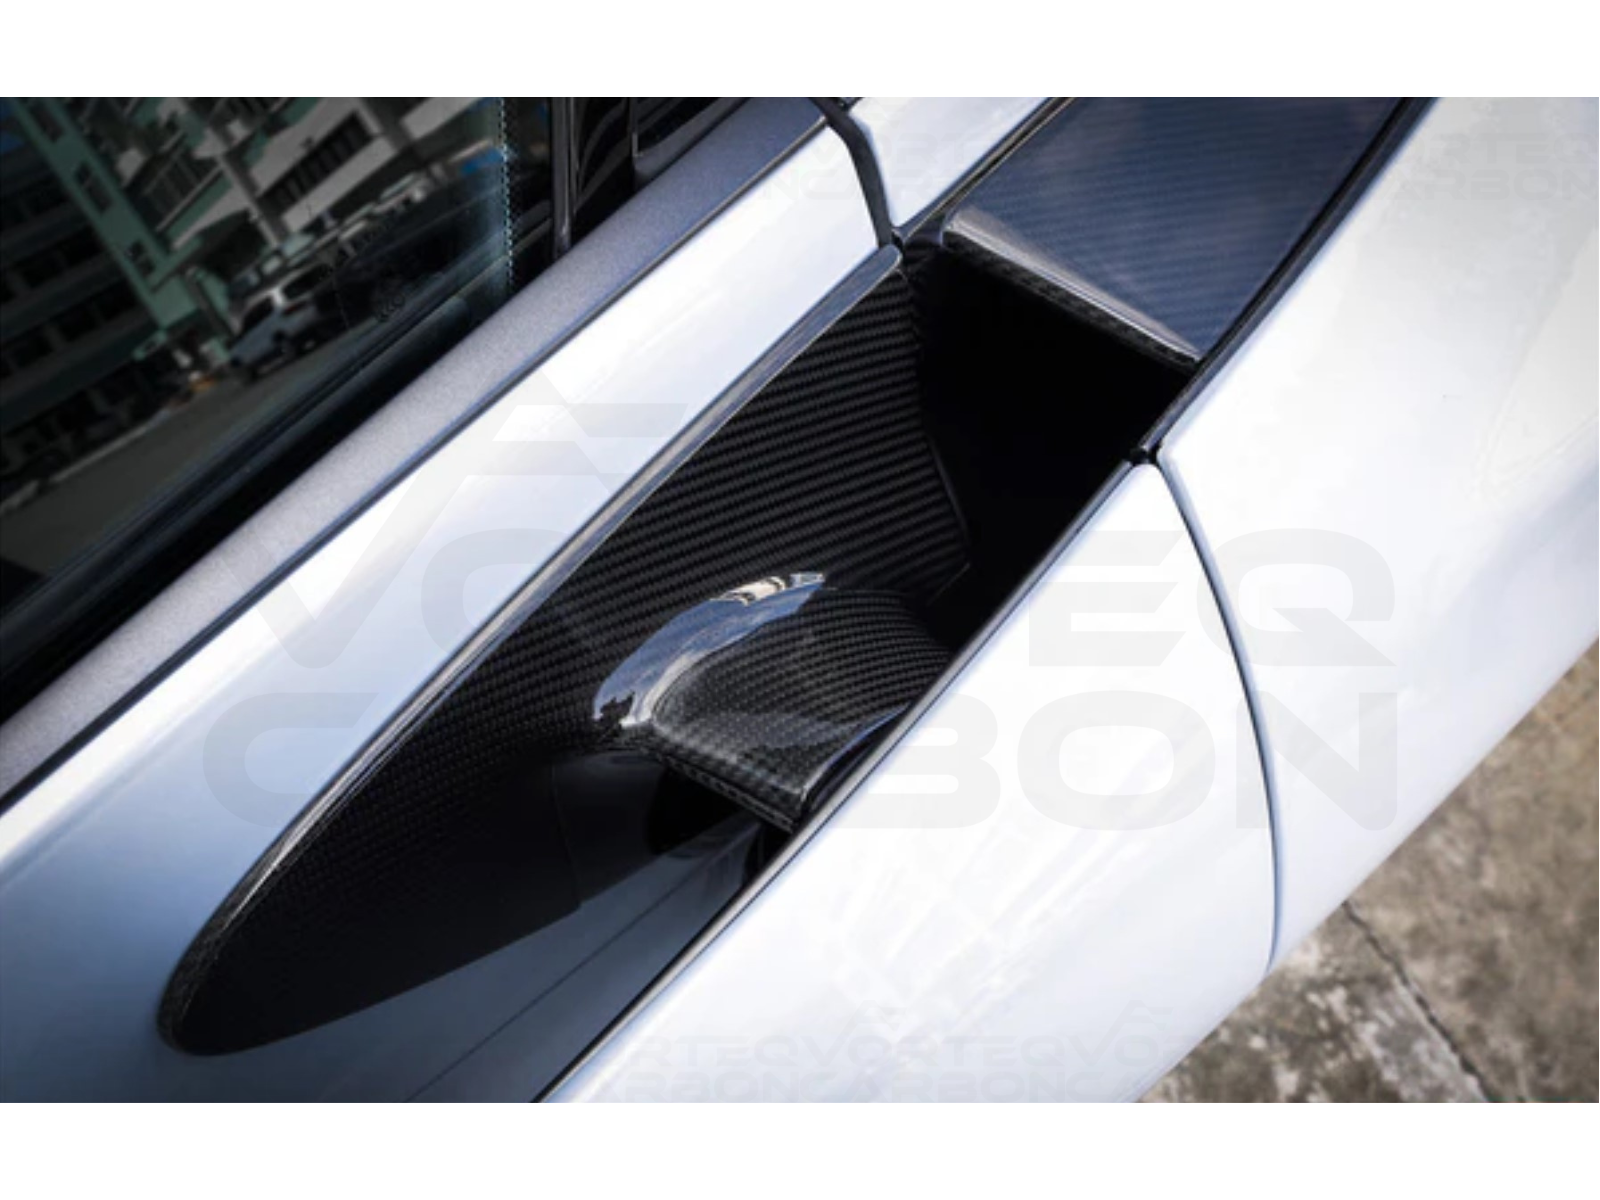 vorteq carbon fiber mclaren 720s door handles